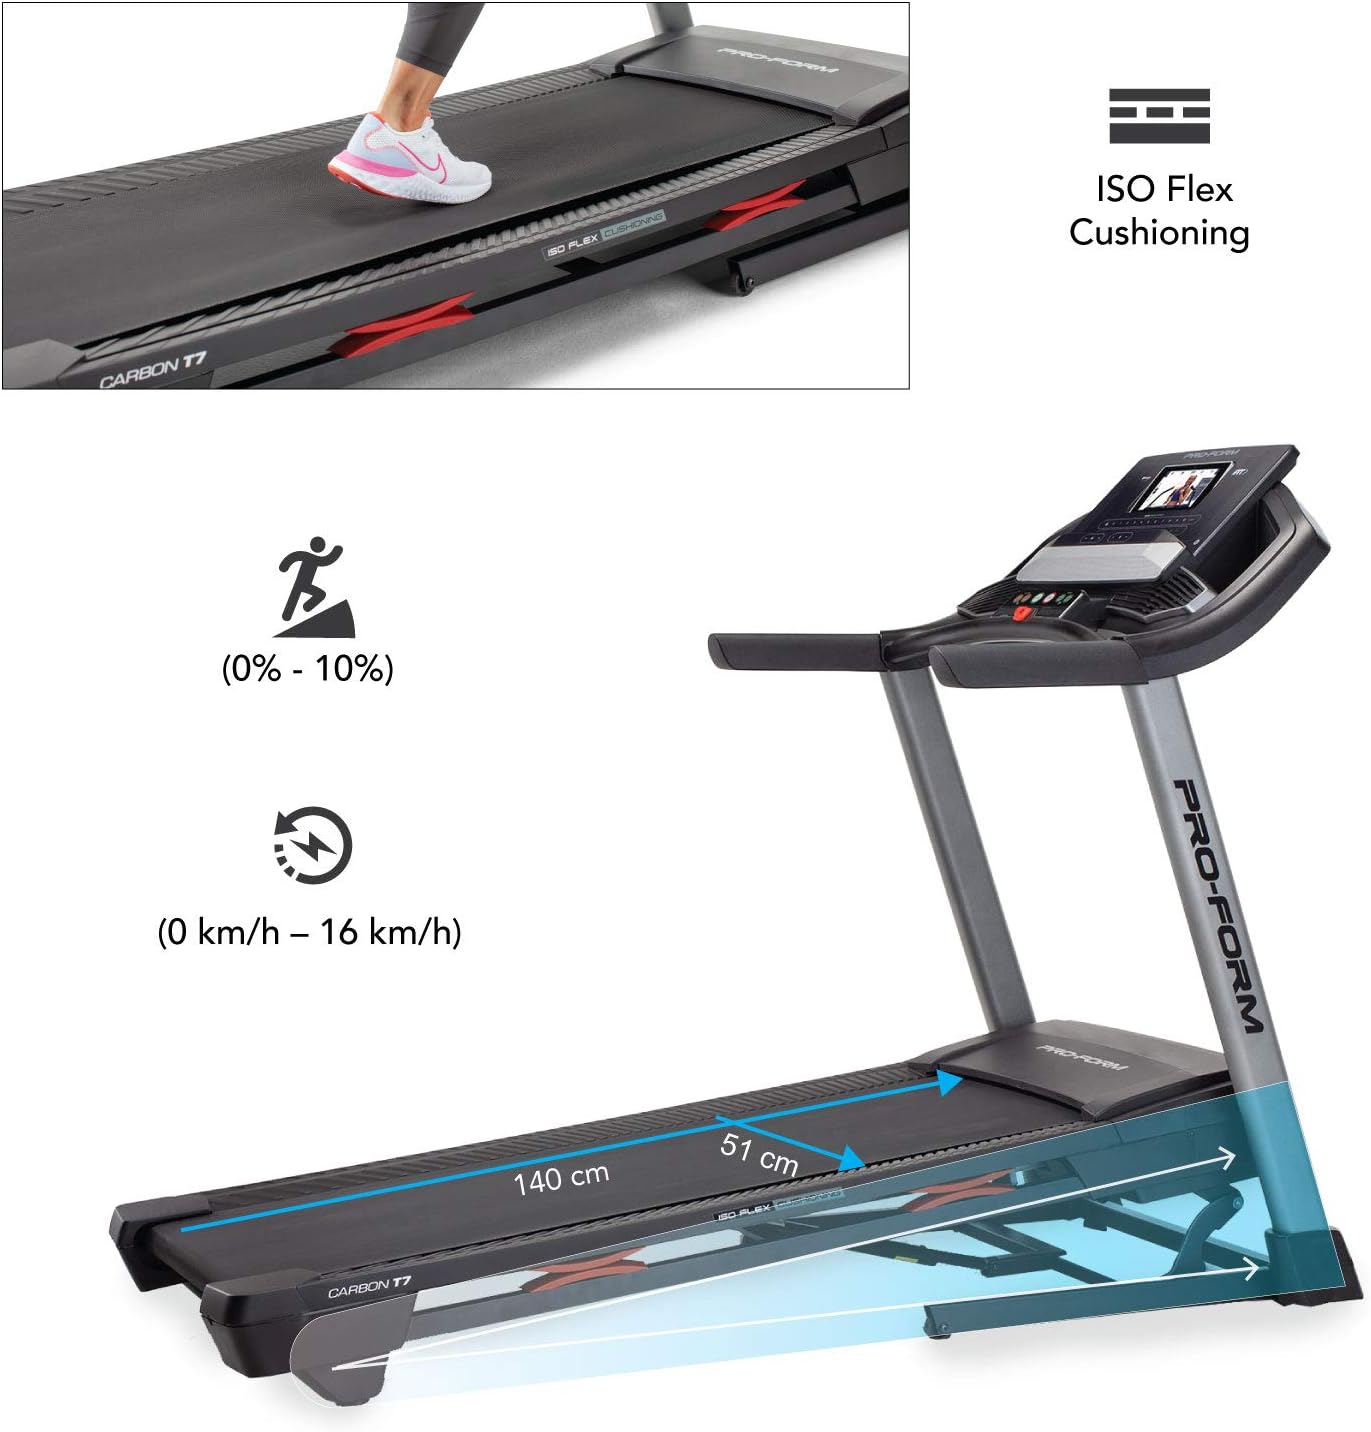 Proform Treadmill Carbon T7